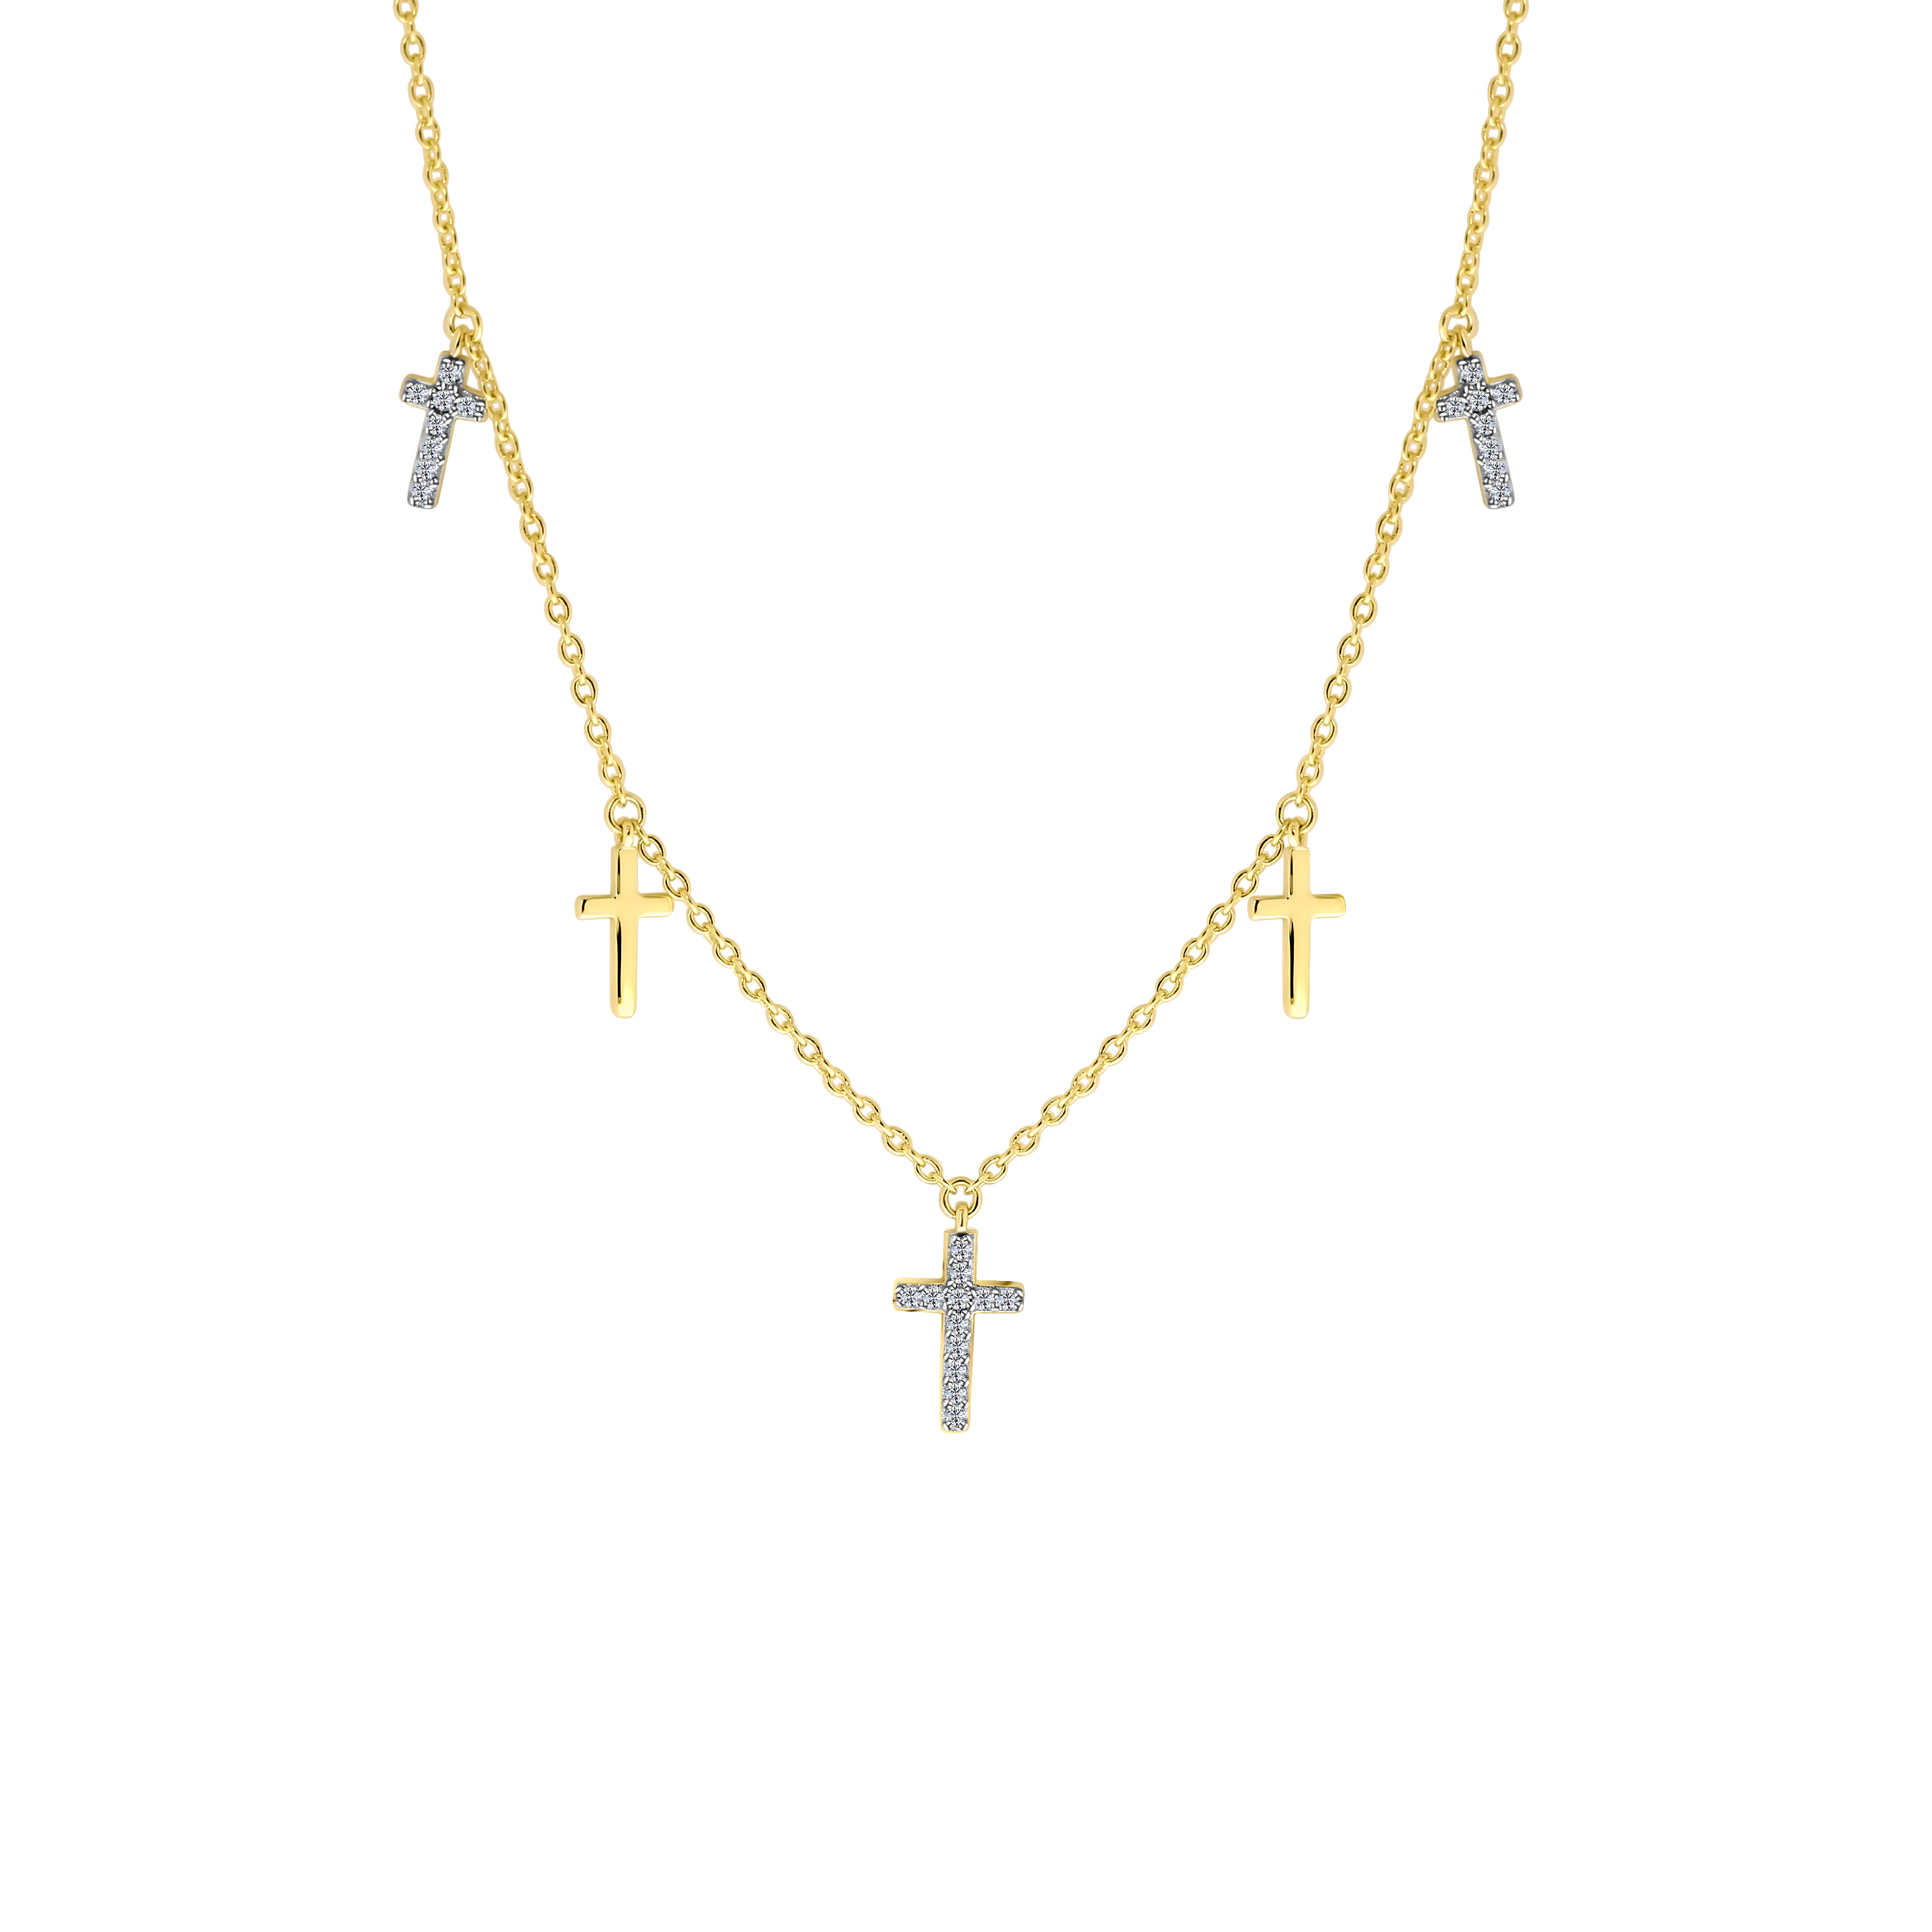 Sterling zilveren goud vergulde collier kruis met zirkonia 213C0147-430